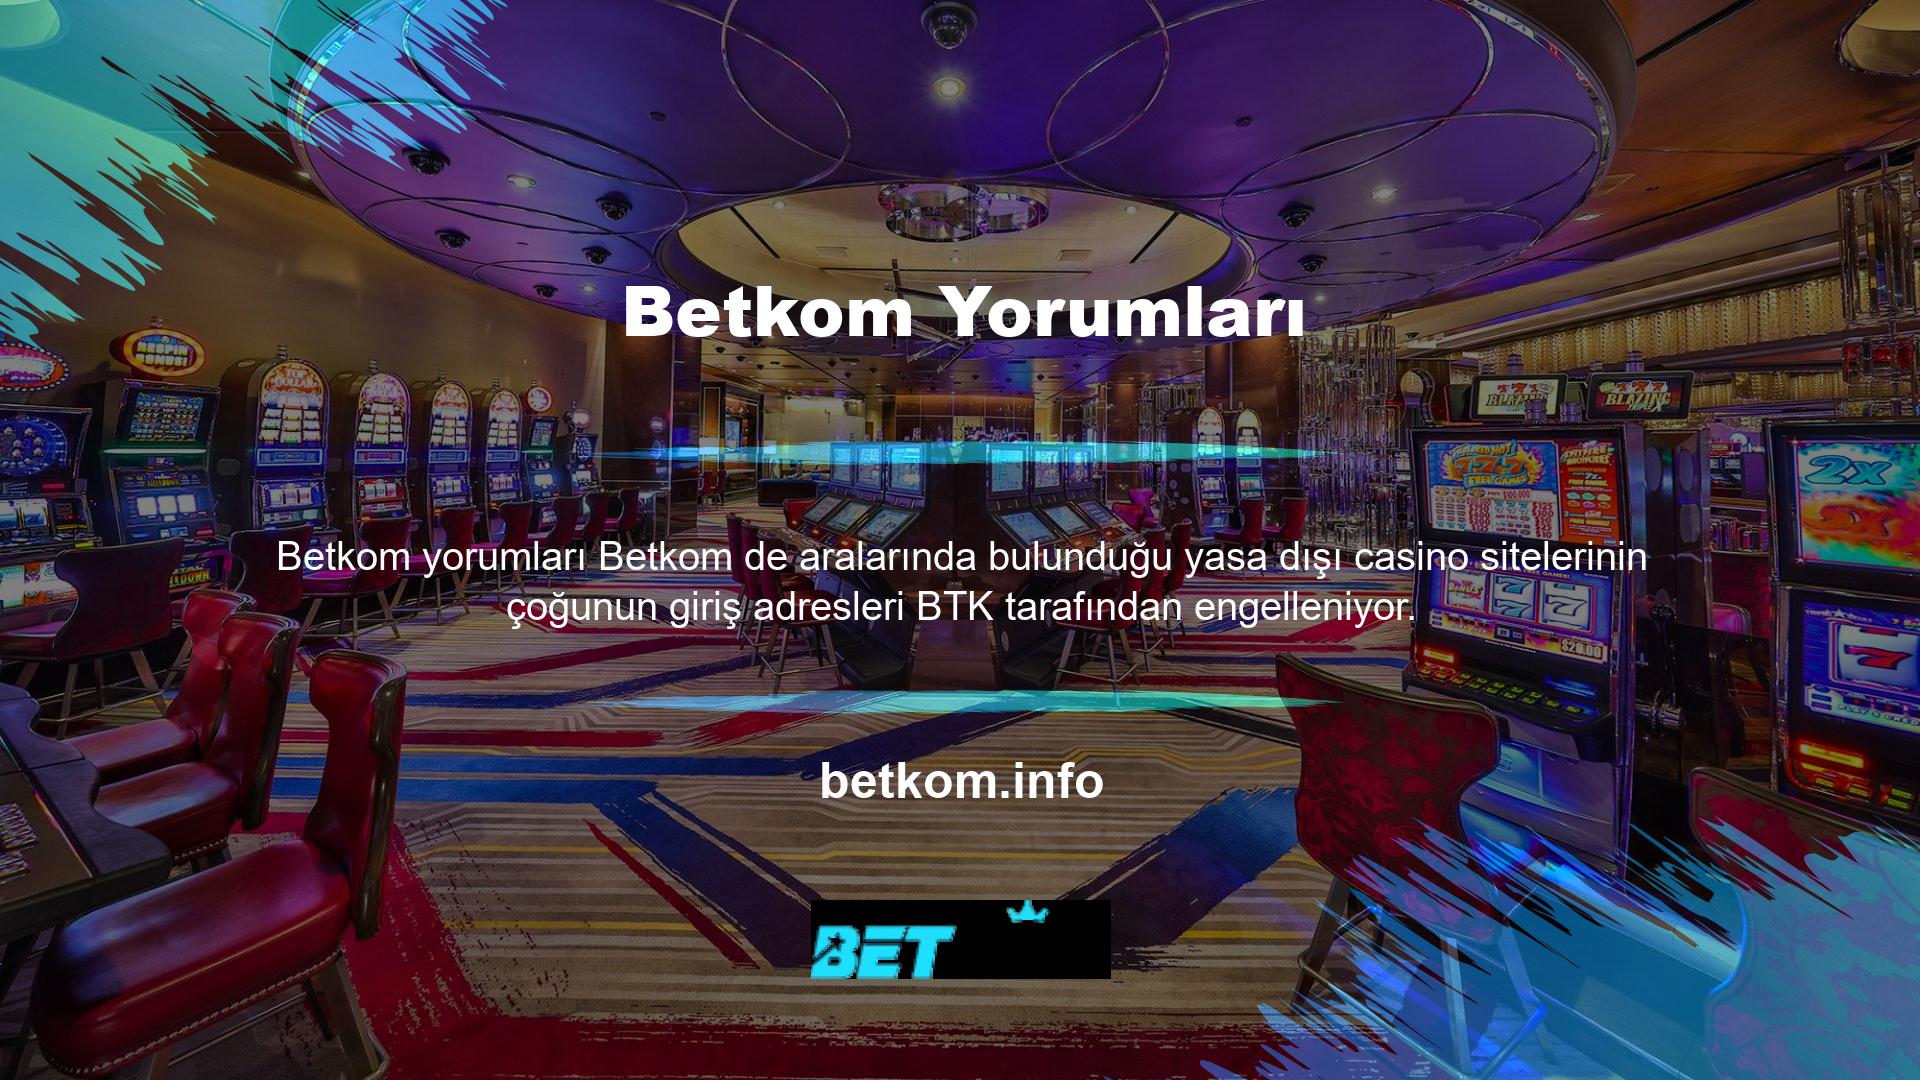 Bunun nedeni, Türkiye'de yasa dışı casino siteleri yasaklanmışken, yurt dışında bulunan, vergi ödemeyen, ofisi olmayan casino sitelerinin yasa dışı ve yasa dışı olmasıdır